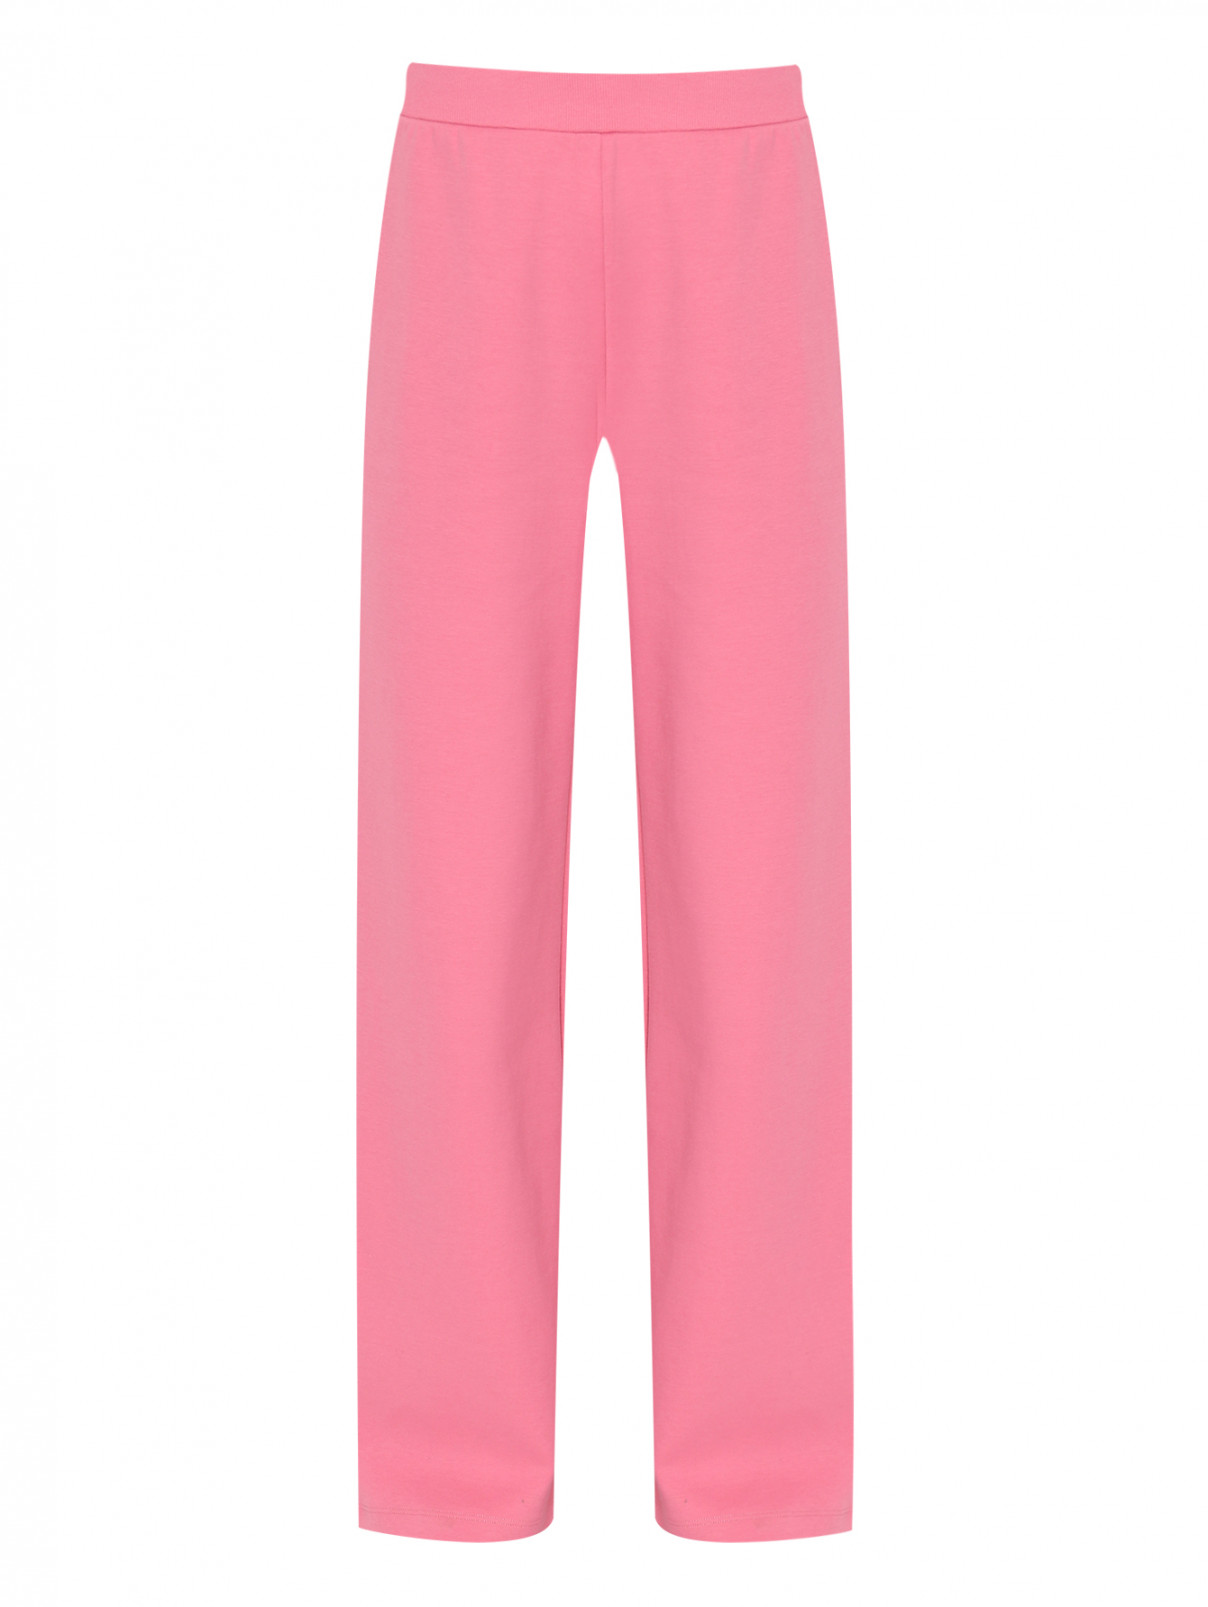 Трикотажные брюки на резинке Max Mara  –  Общий вид  – Цвет:  Розовый